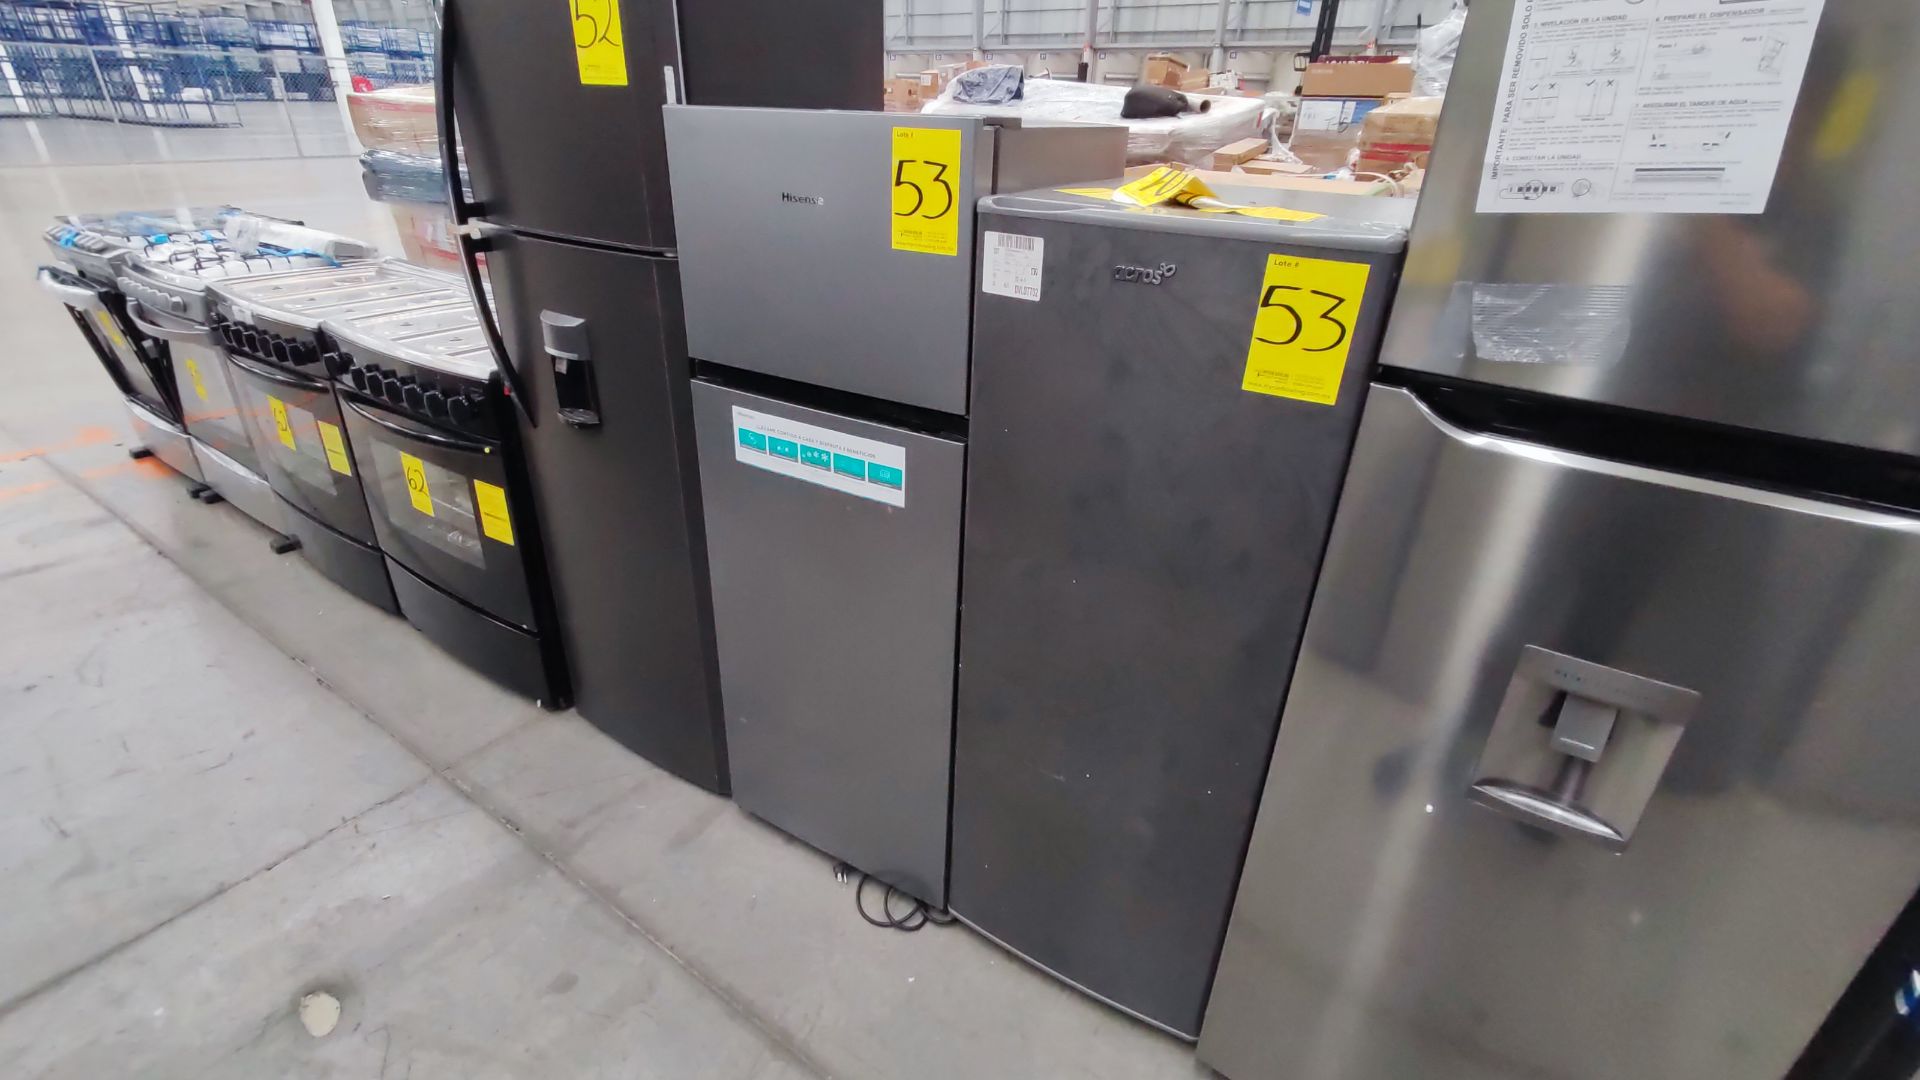 Lote de 2 Refrigeradores, Contiene; 1 Refrigerador Marca Hisense, Modelo BCYNY, Serie 1B0205Z0080JB - Image 8 of 11